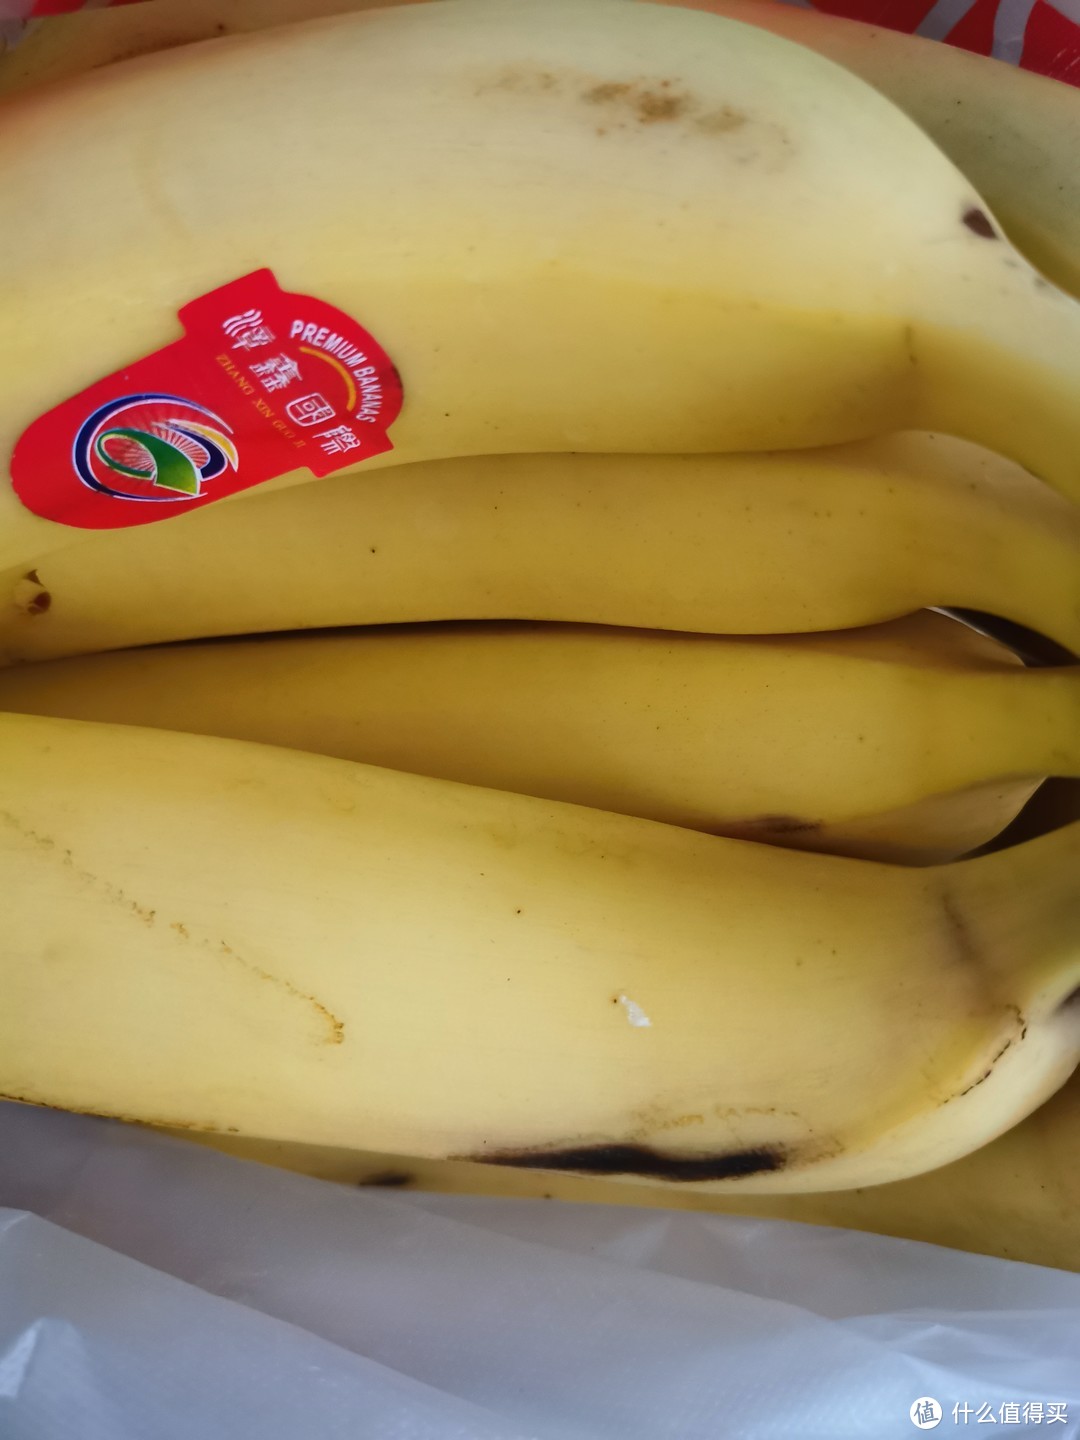 十块钱三斤的香蕉，还挺甜